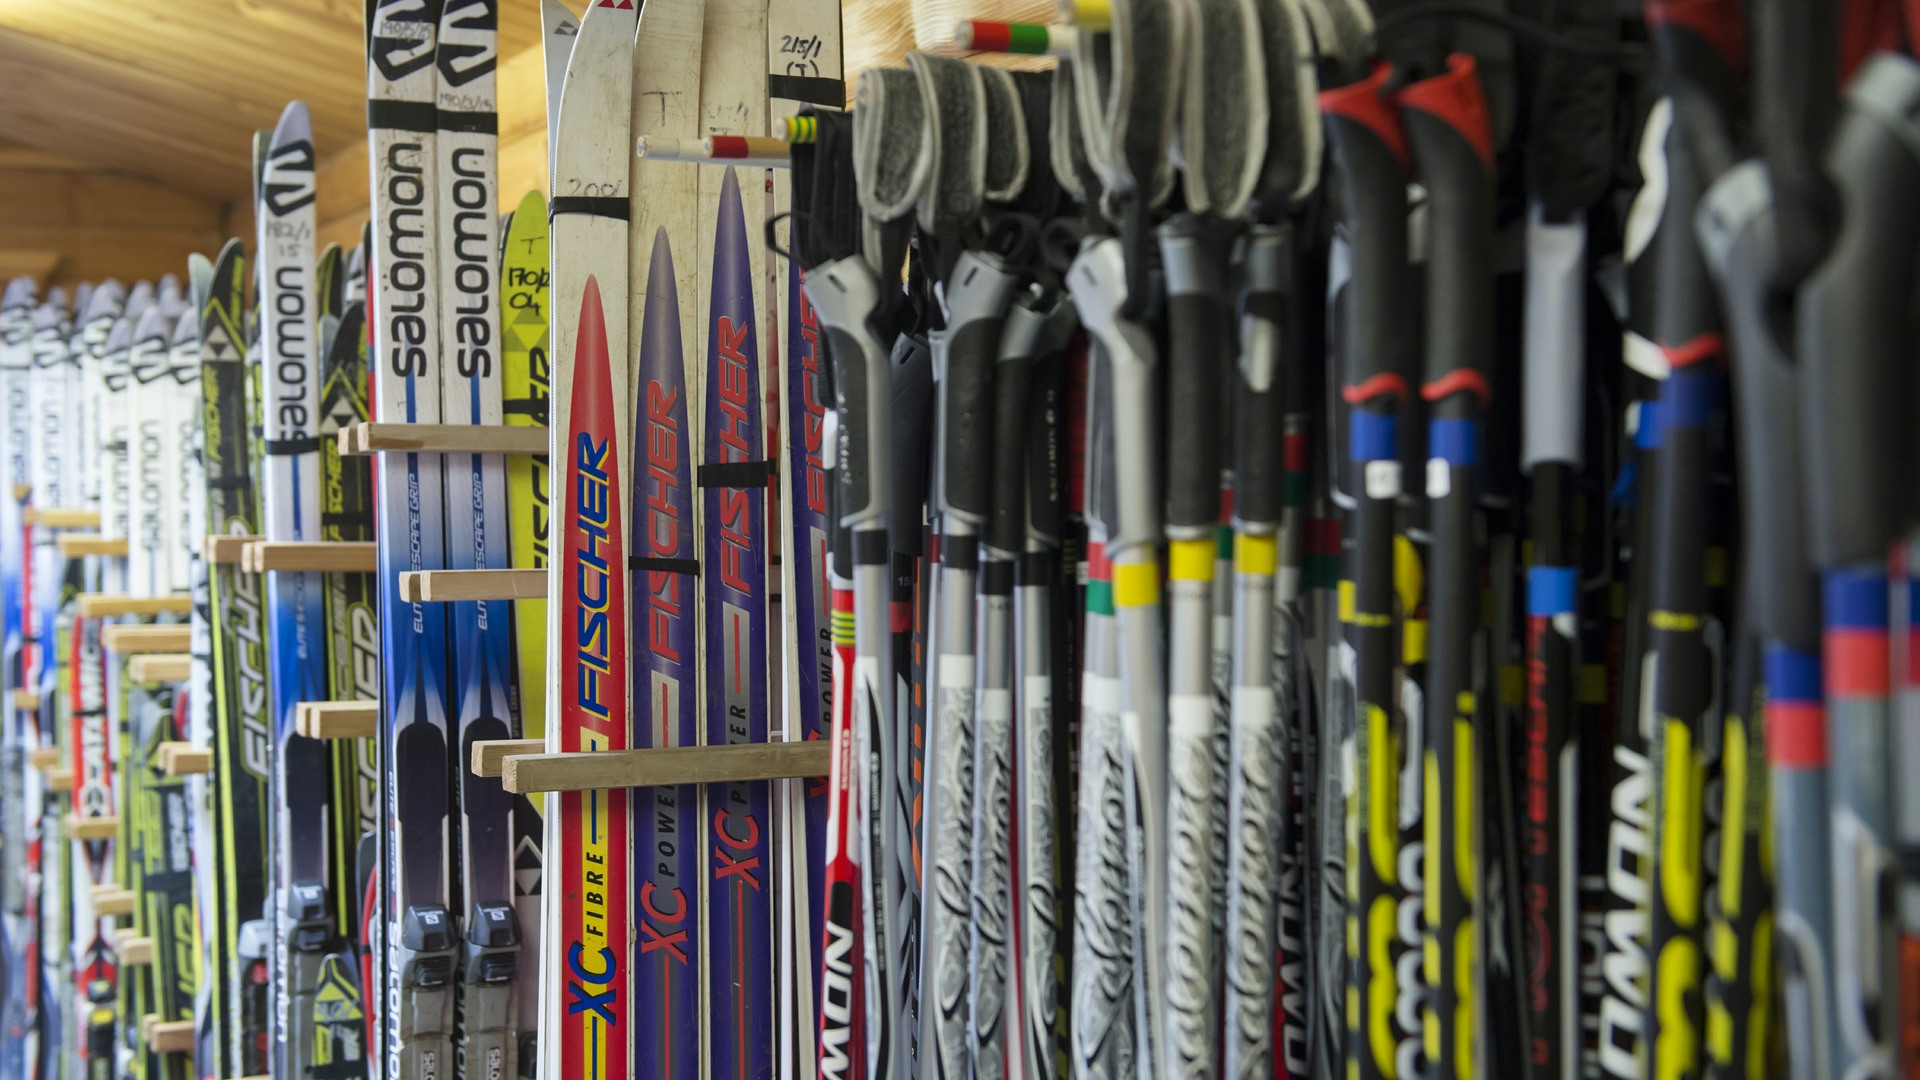 A selection of ski's